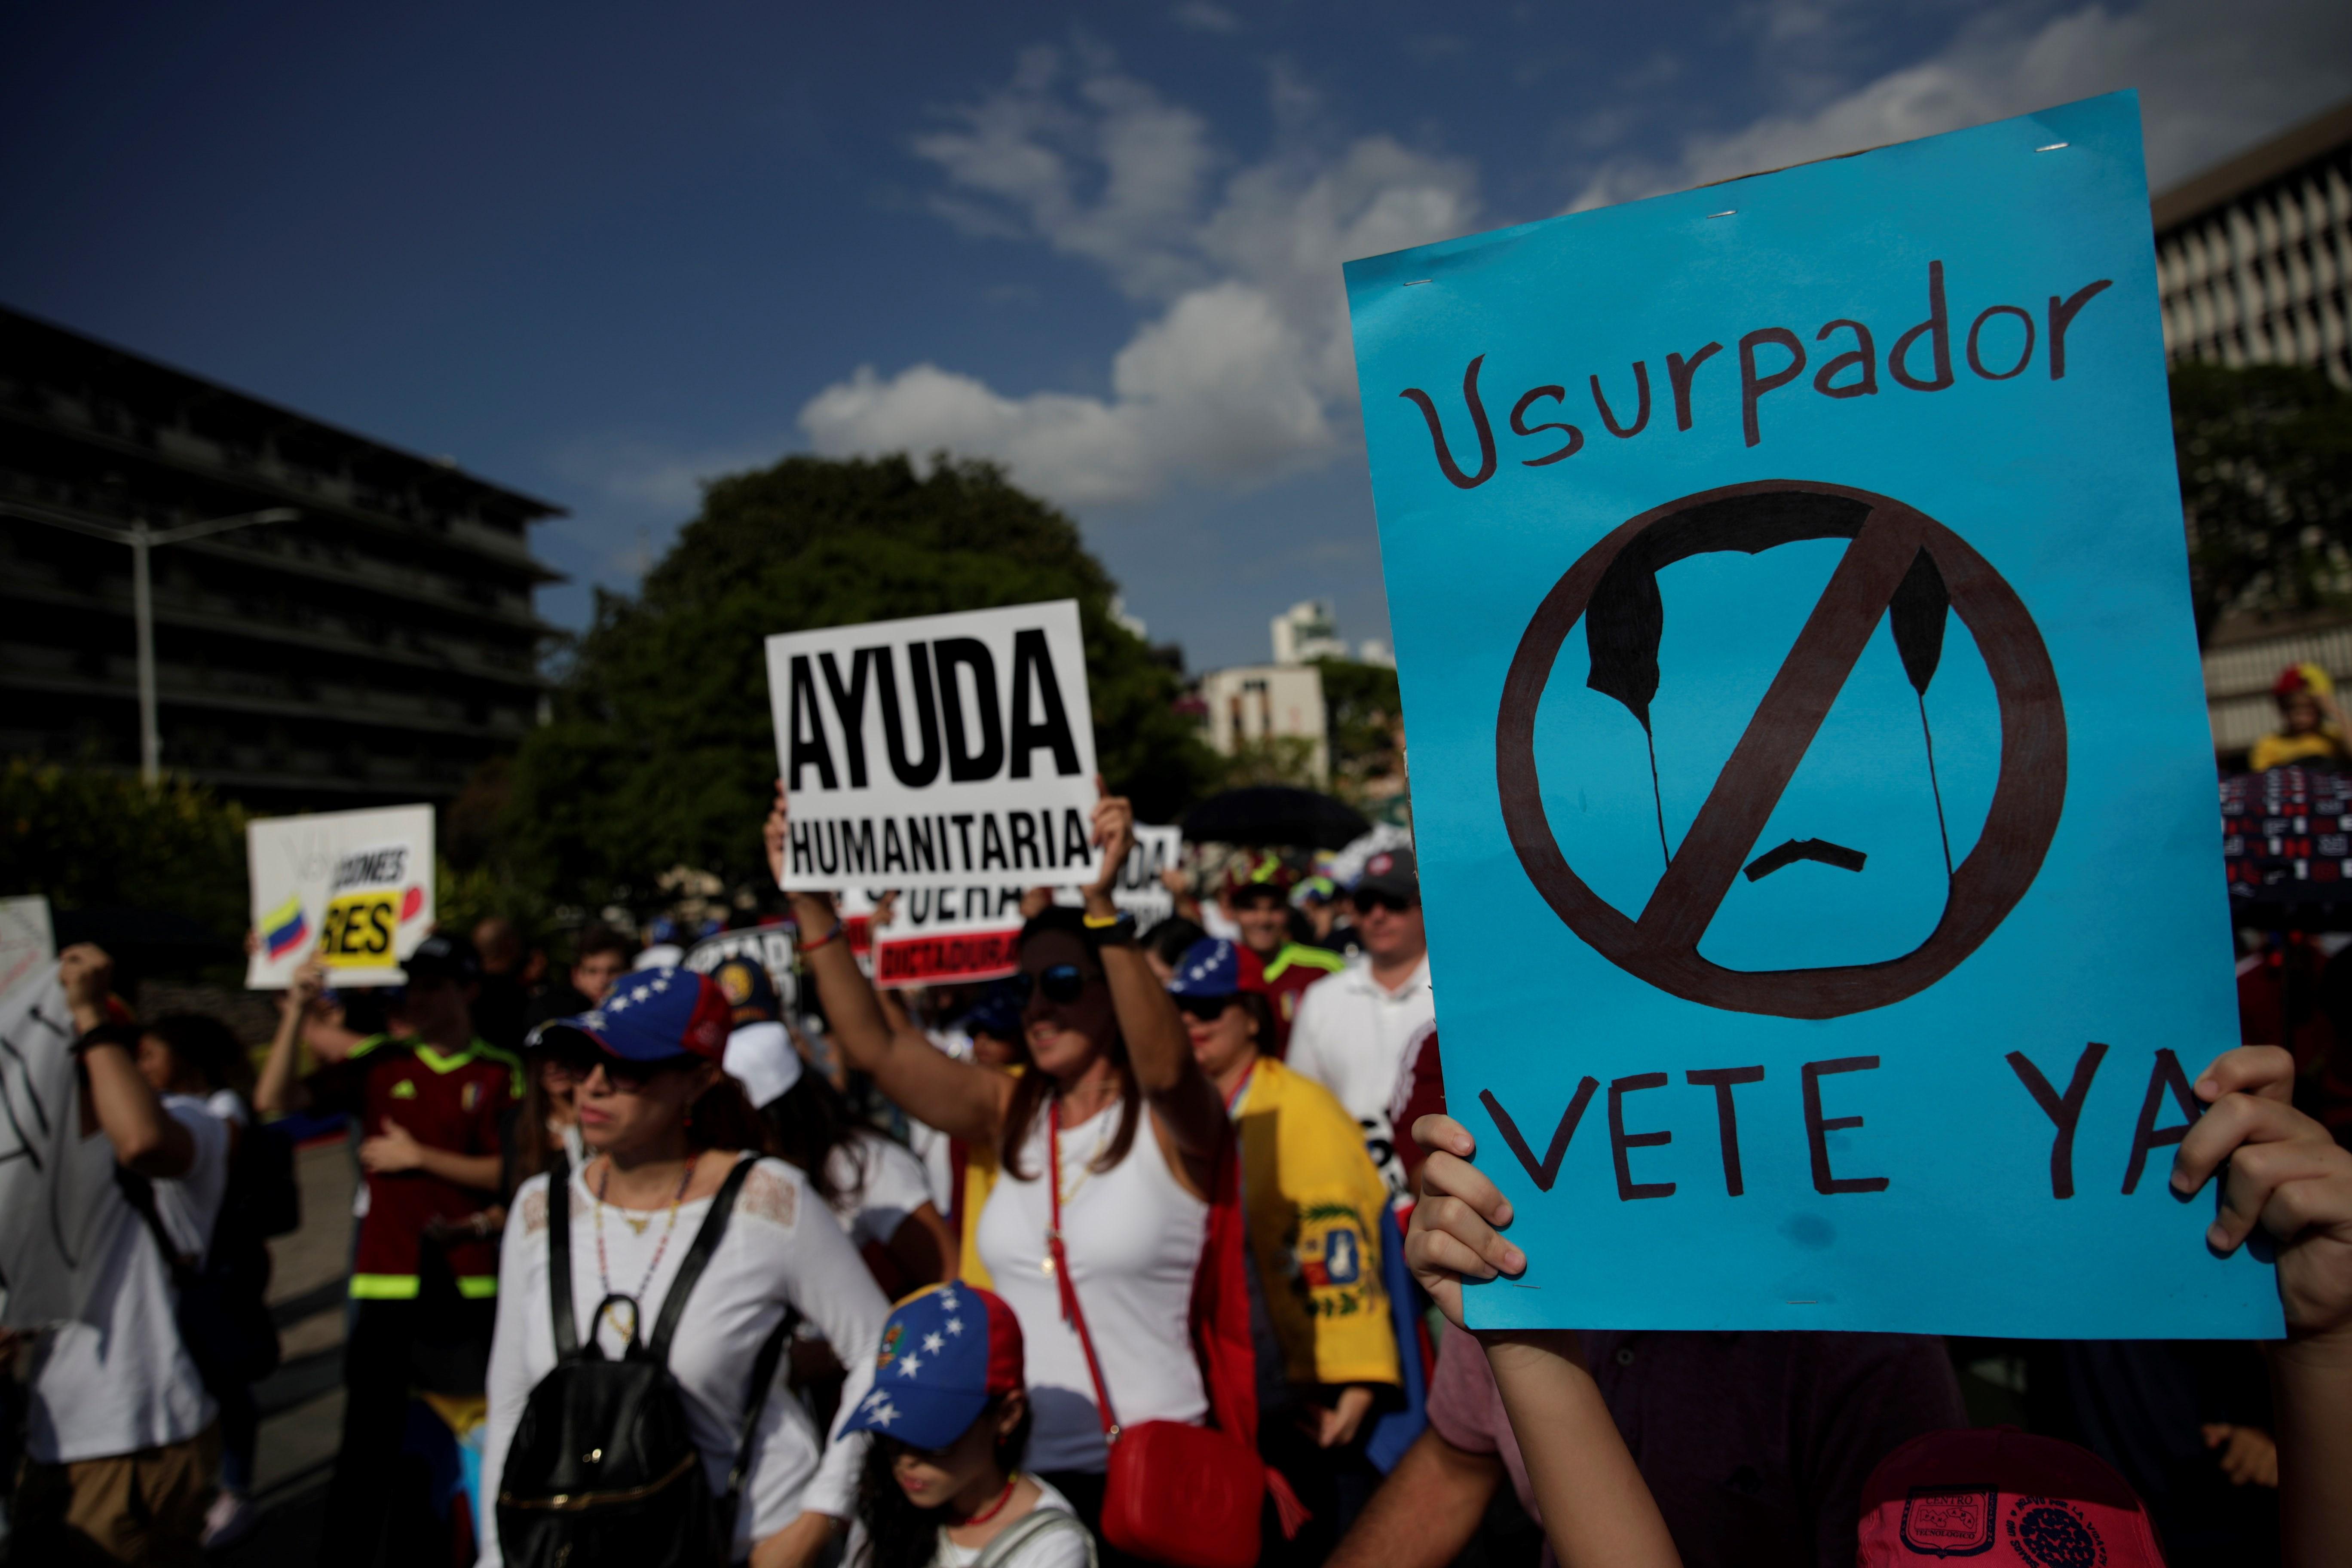 FOTO Ebrard: No queremos defender a Maduro, ni su régimen/ mujer protesta en venezuela 4 febrero 2019/ Panama enero 2019